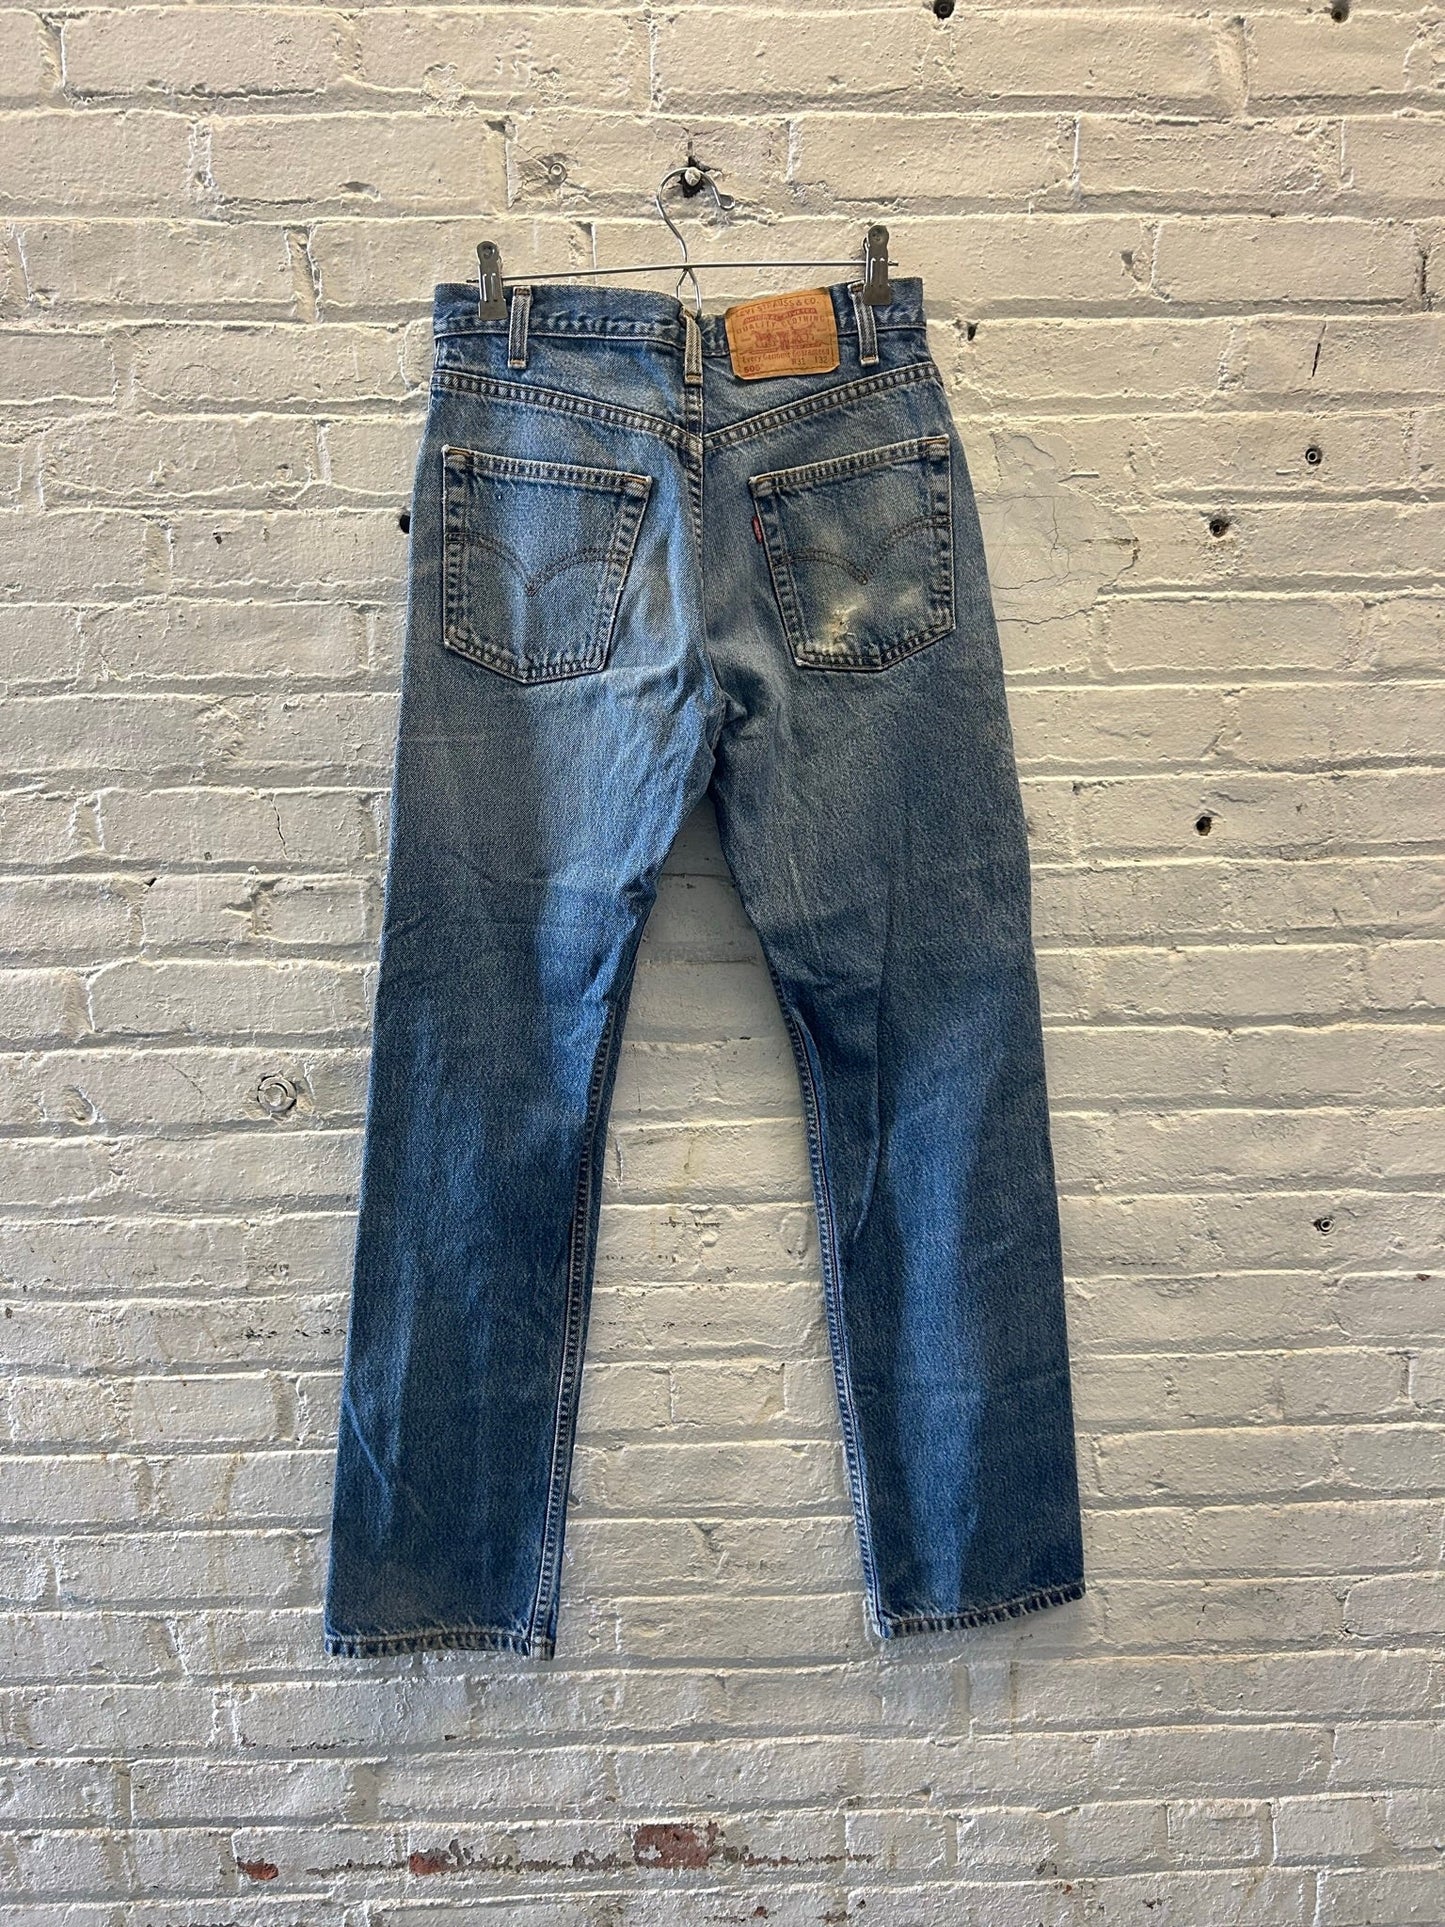 Levi's 505 Jeans Size 31x32